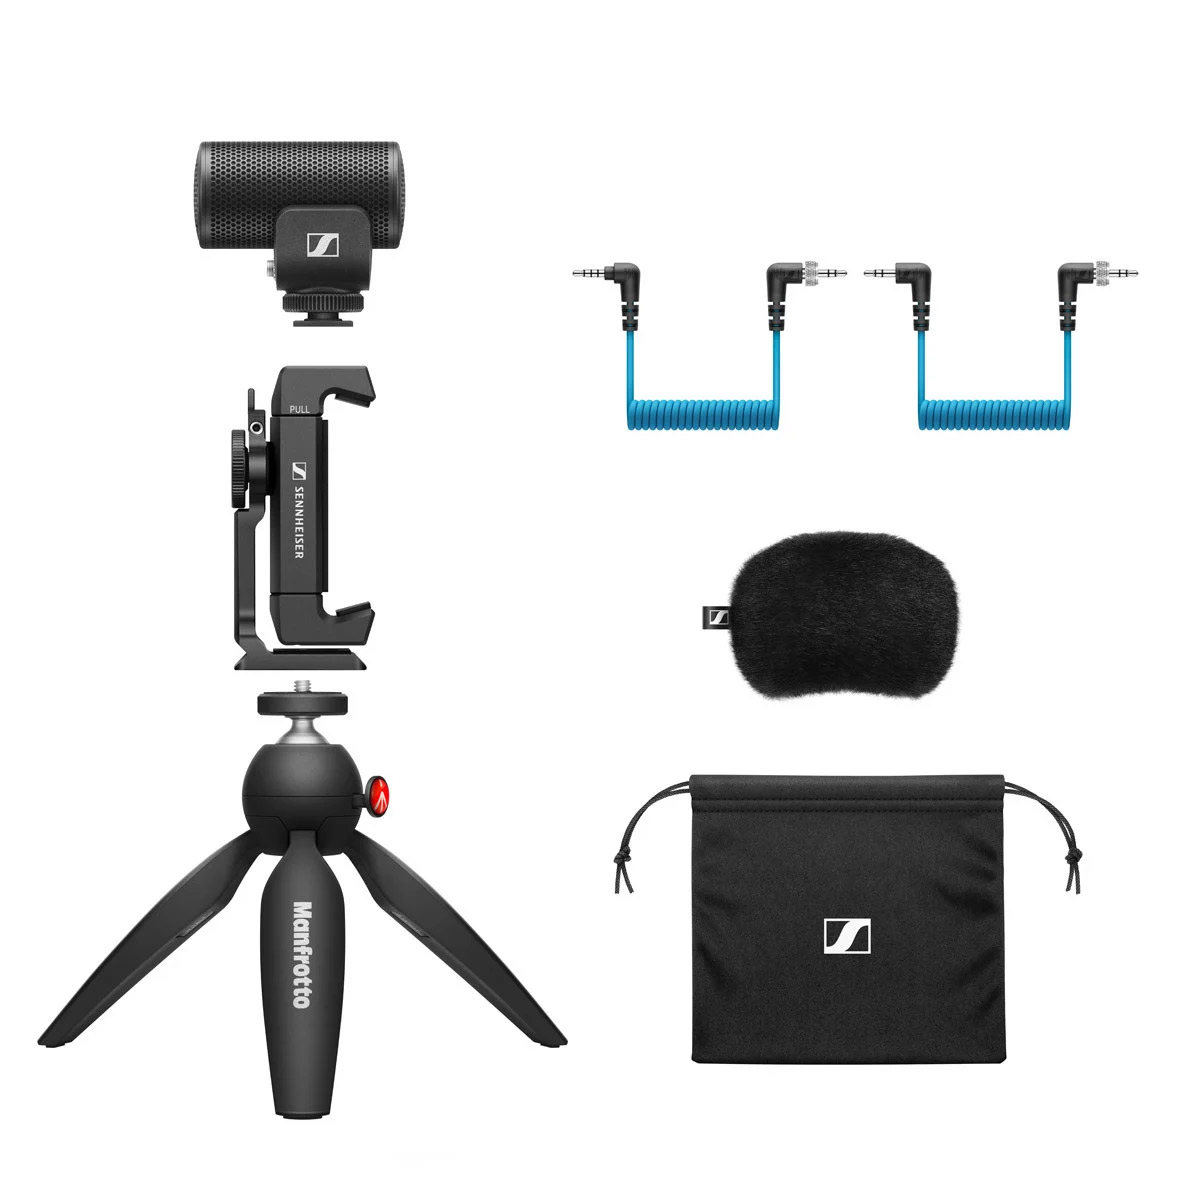 SENNHEISER MKE 200 Mobile Kit 指向性カメラマイク モバイルキット ゼンハイザー